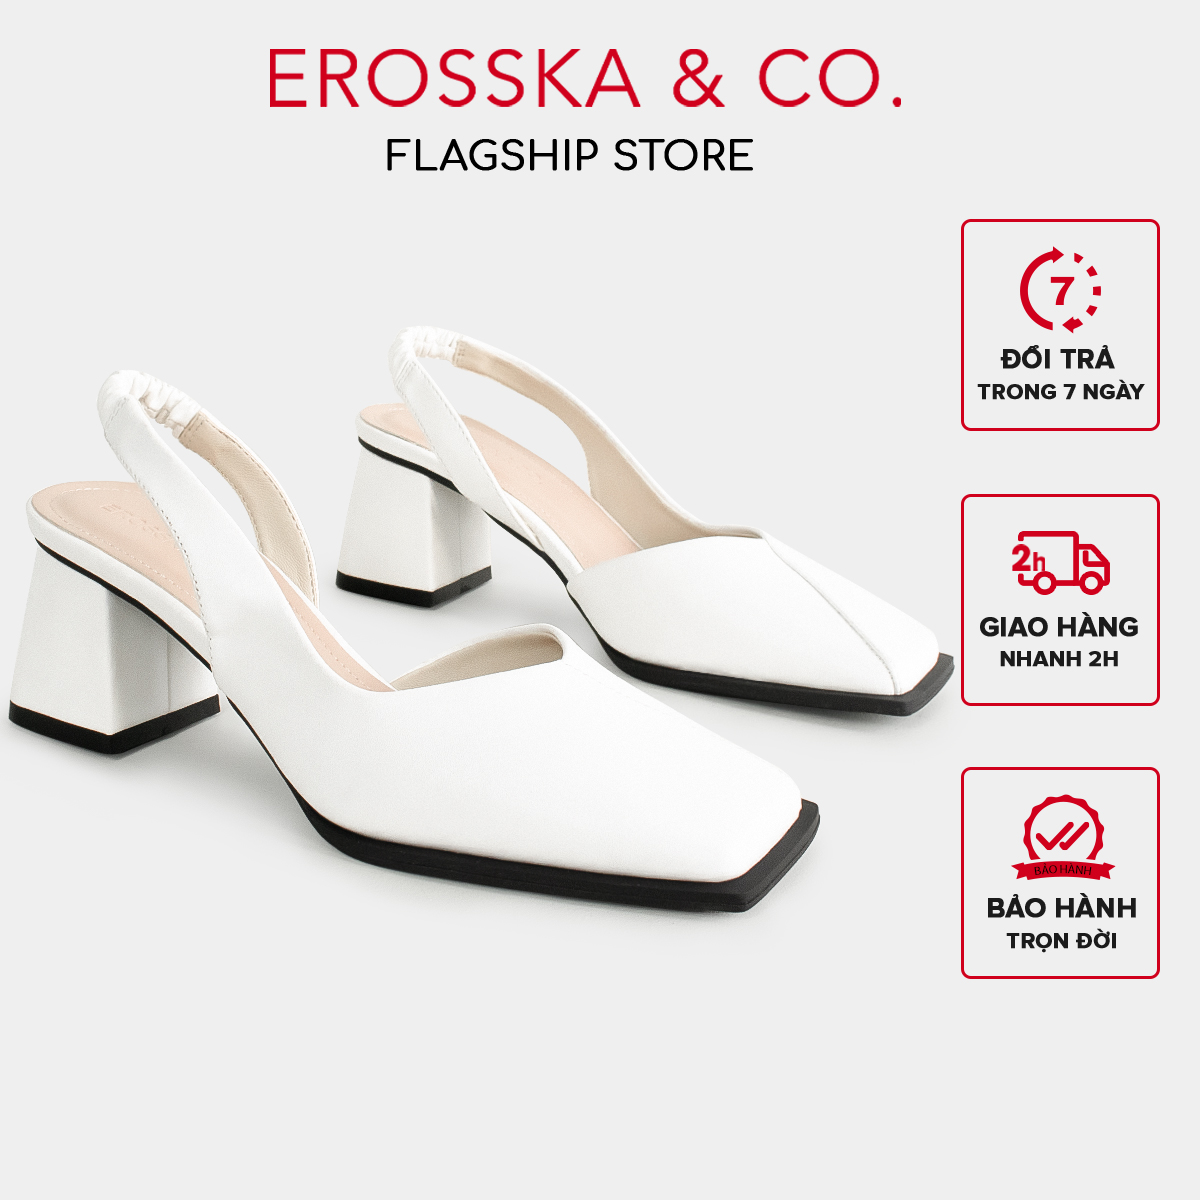 Erosska - Giày cao gót nữ mũi vuông dây quai mảnh nhún sau màu trắng - EL027